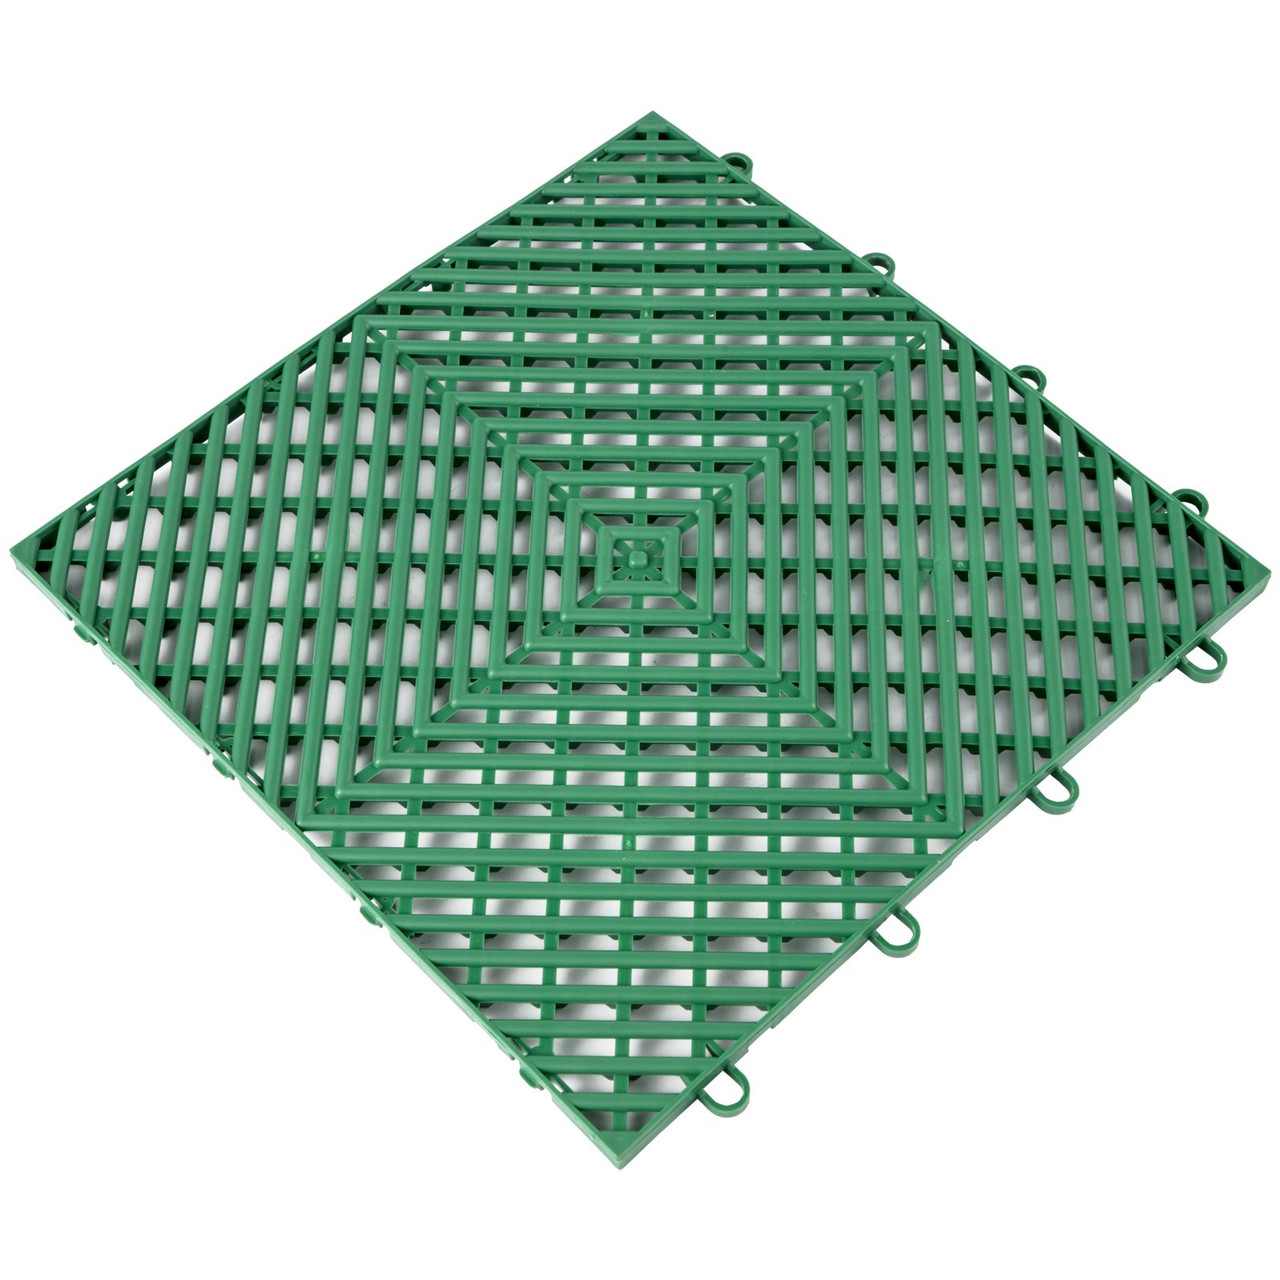 Tiles Interlocking 50 PCS Green, Drainage Tiles 12x12x0.5 Inches, Deck Tiles Outdoor Floor Tiles, Outdoor Interlocking Tiles, Deck Flooring for Pool Shower Bathroom Deck Patio Garage